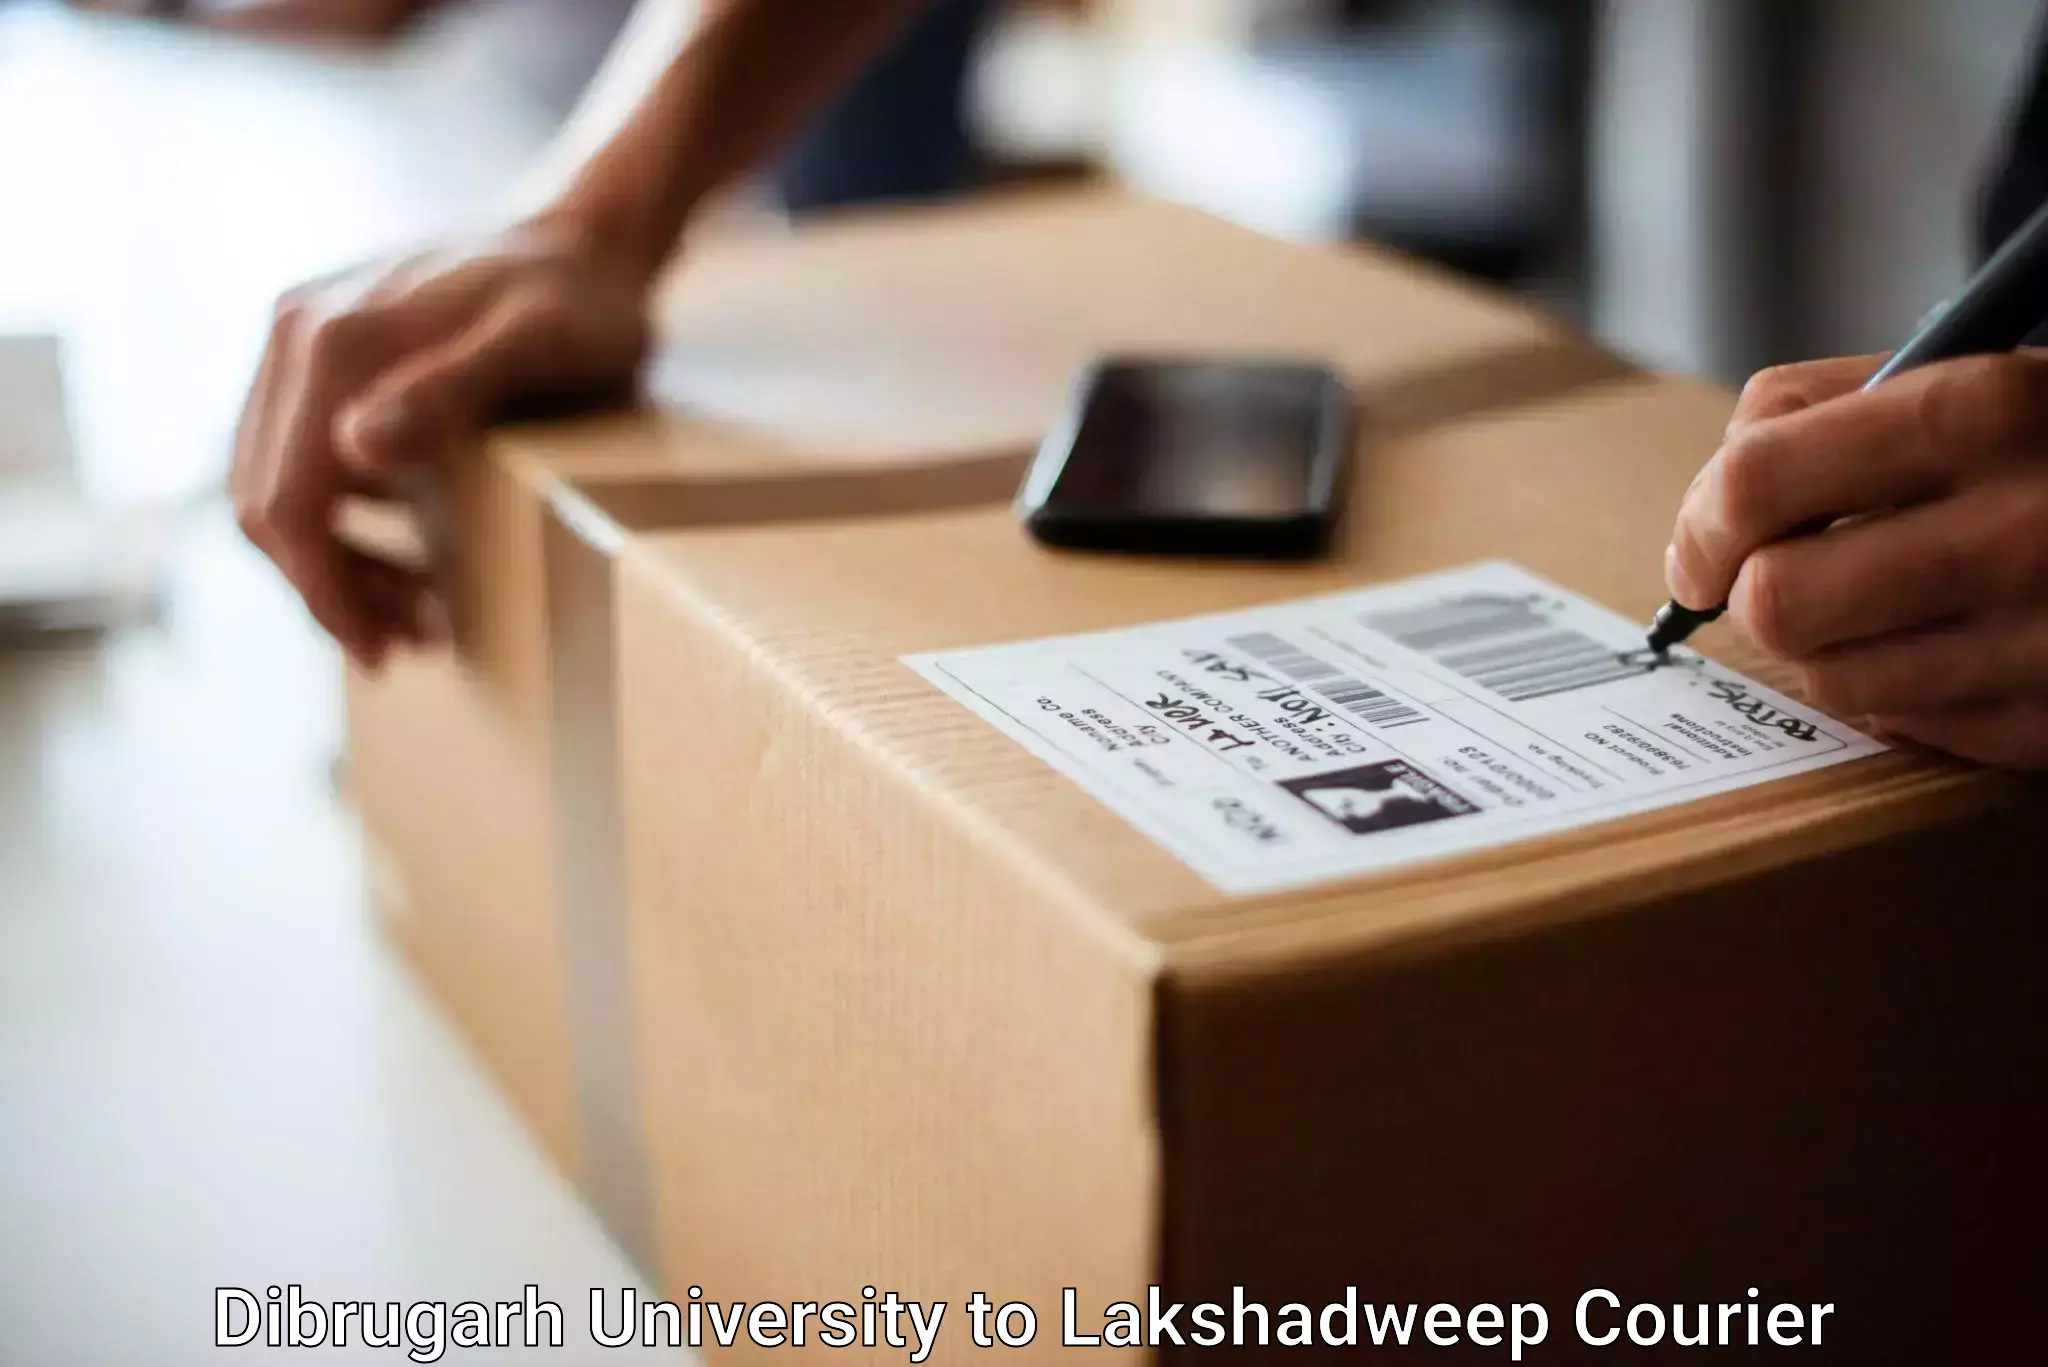 Baggage shipping schedule Dibrugarh University to Lakshadweep